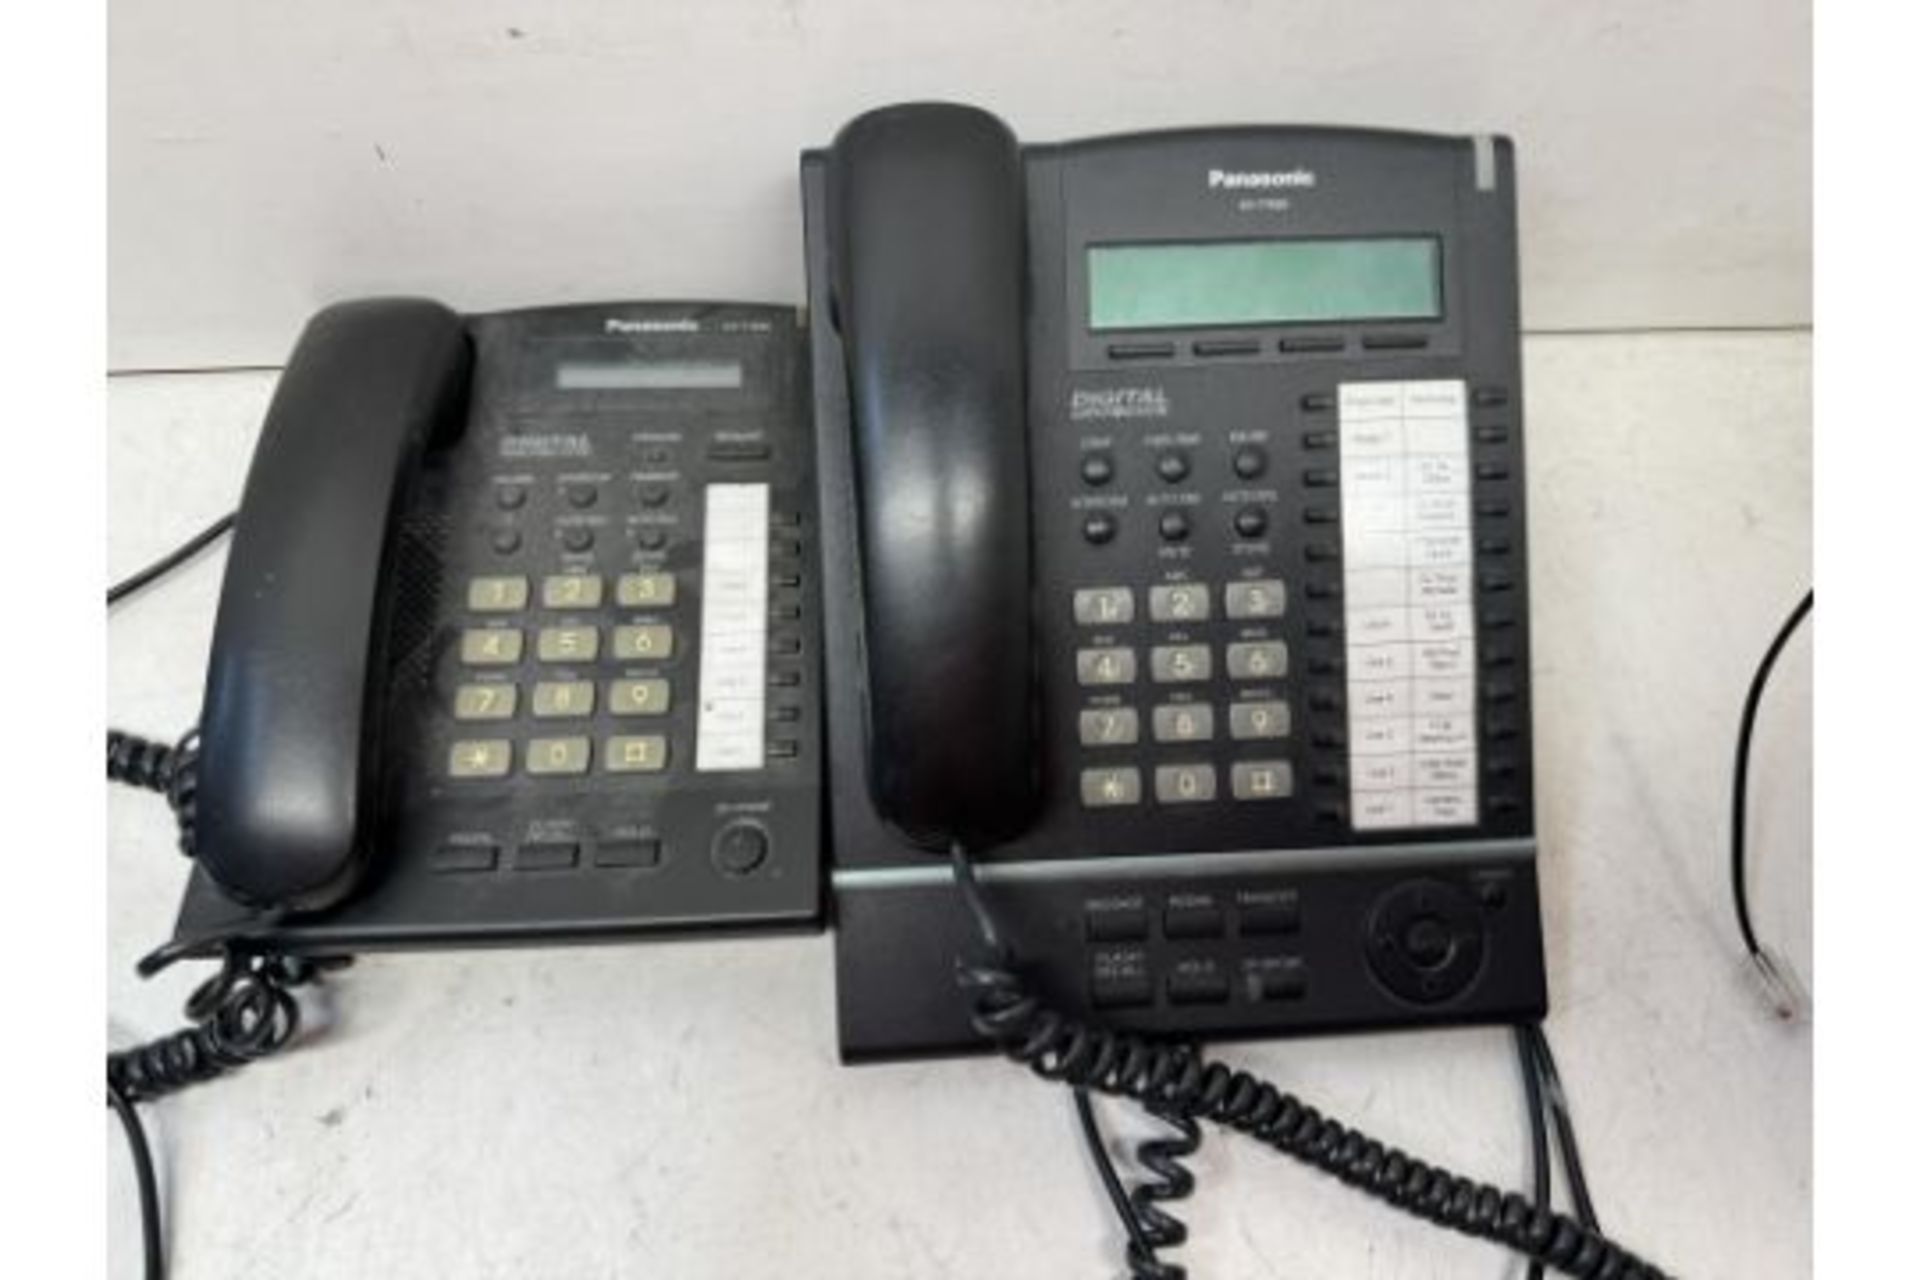 10 x Panasonic Telephones As Seen In Photos